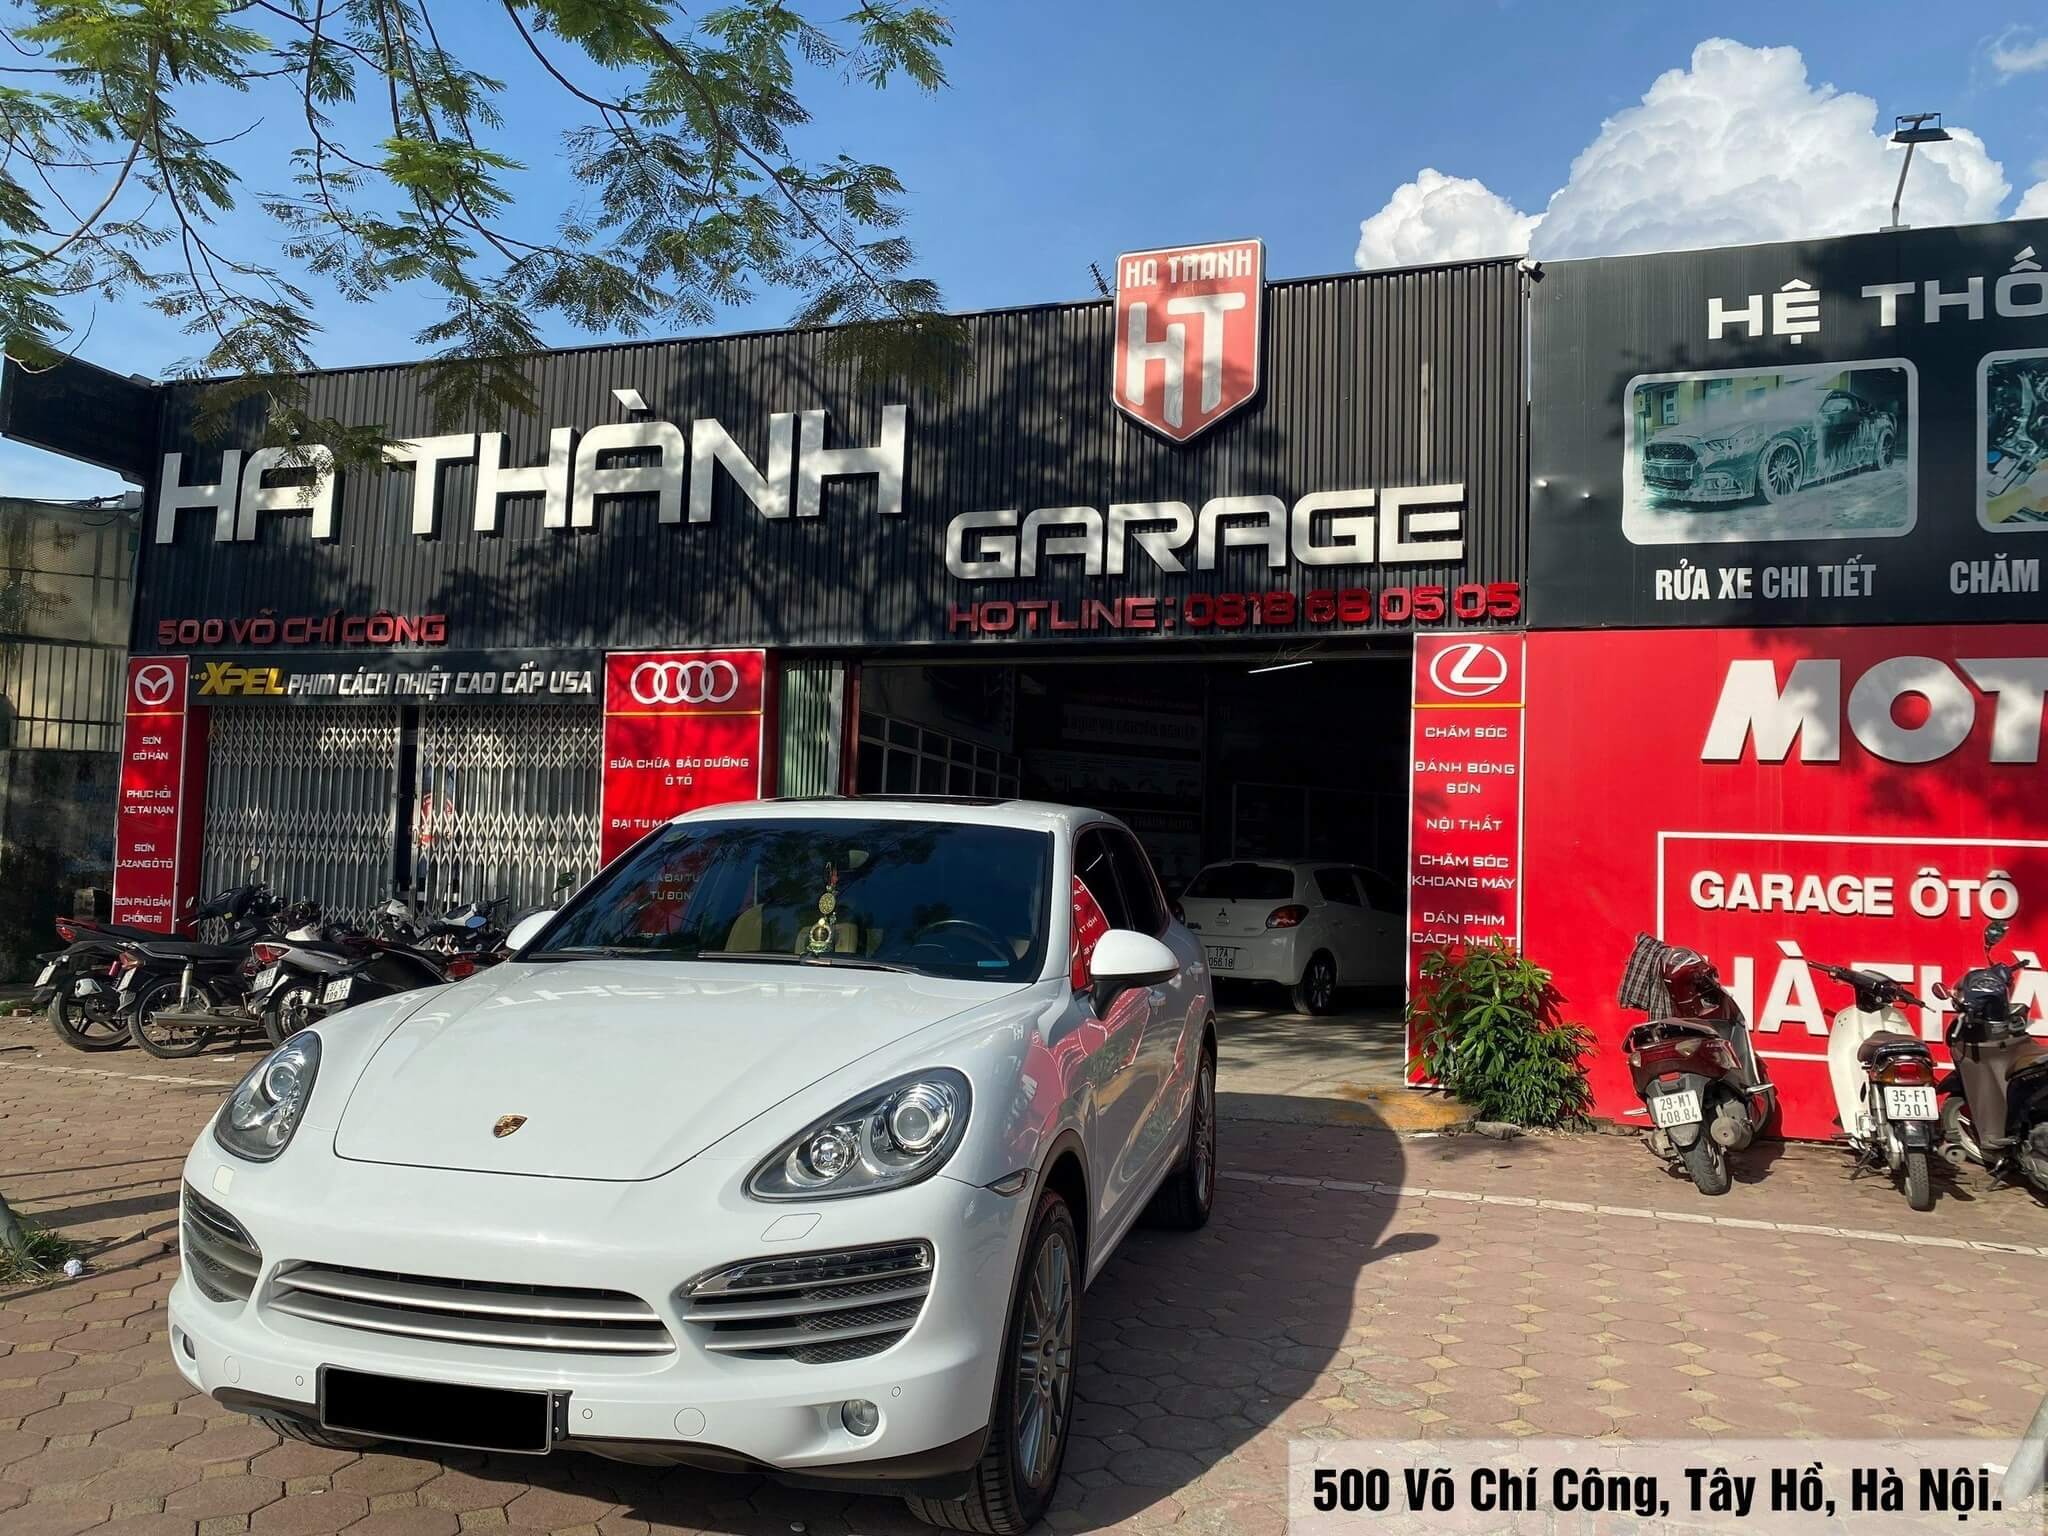 Hà Thành Garage - địa chỉ bảo dưỡng, sửa chữa ô tô uy tín tại Hà Nội